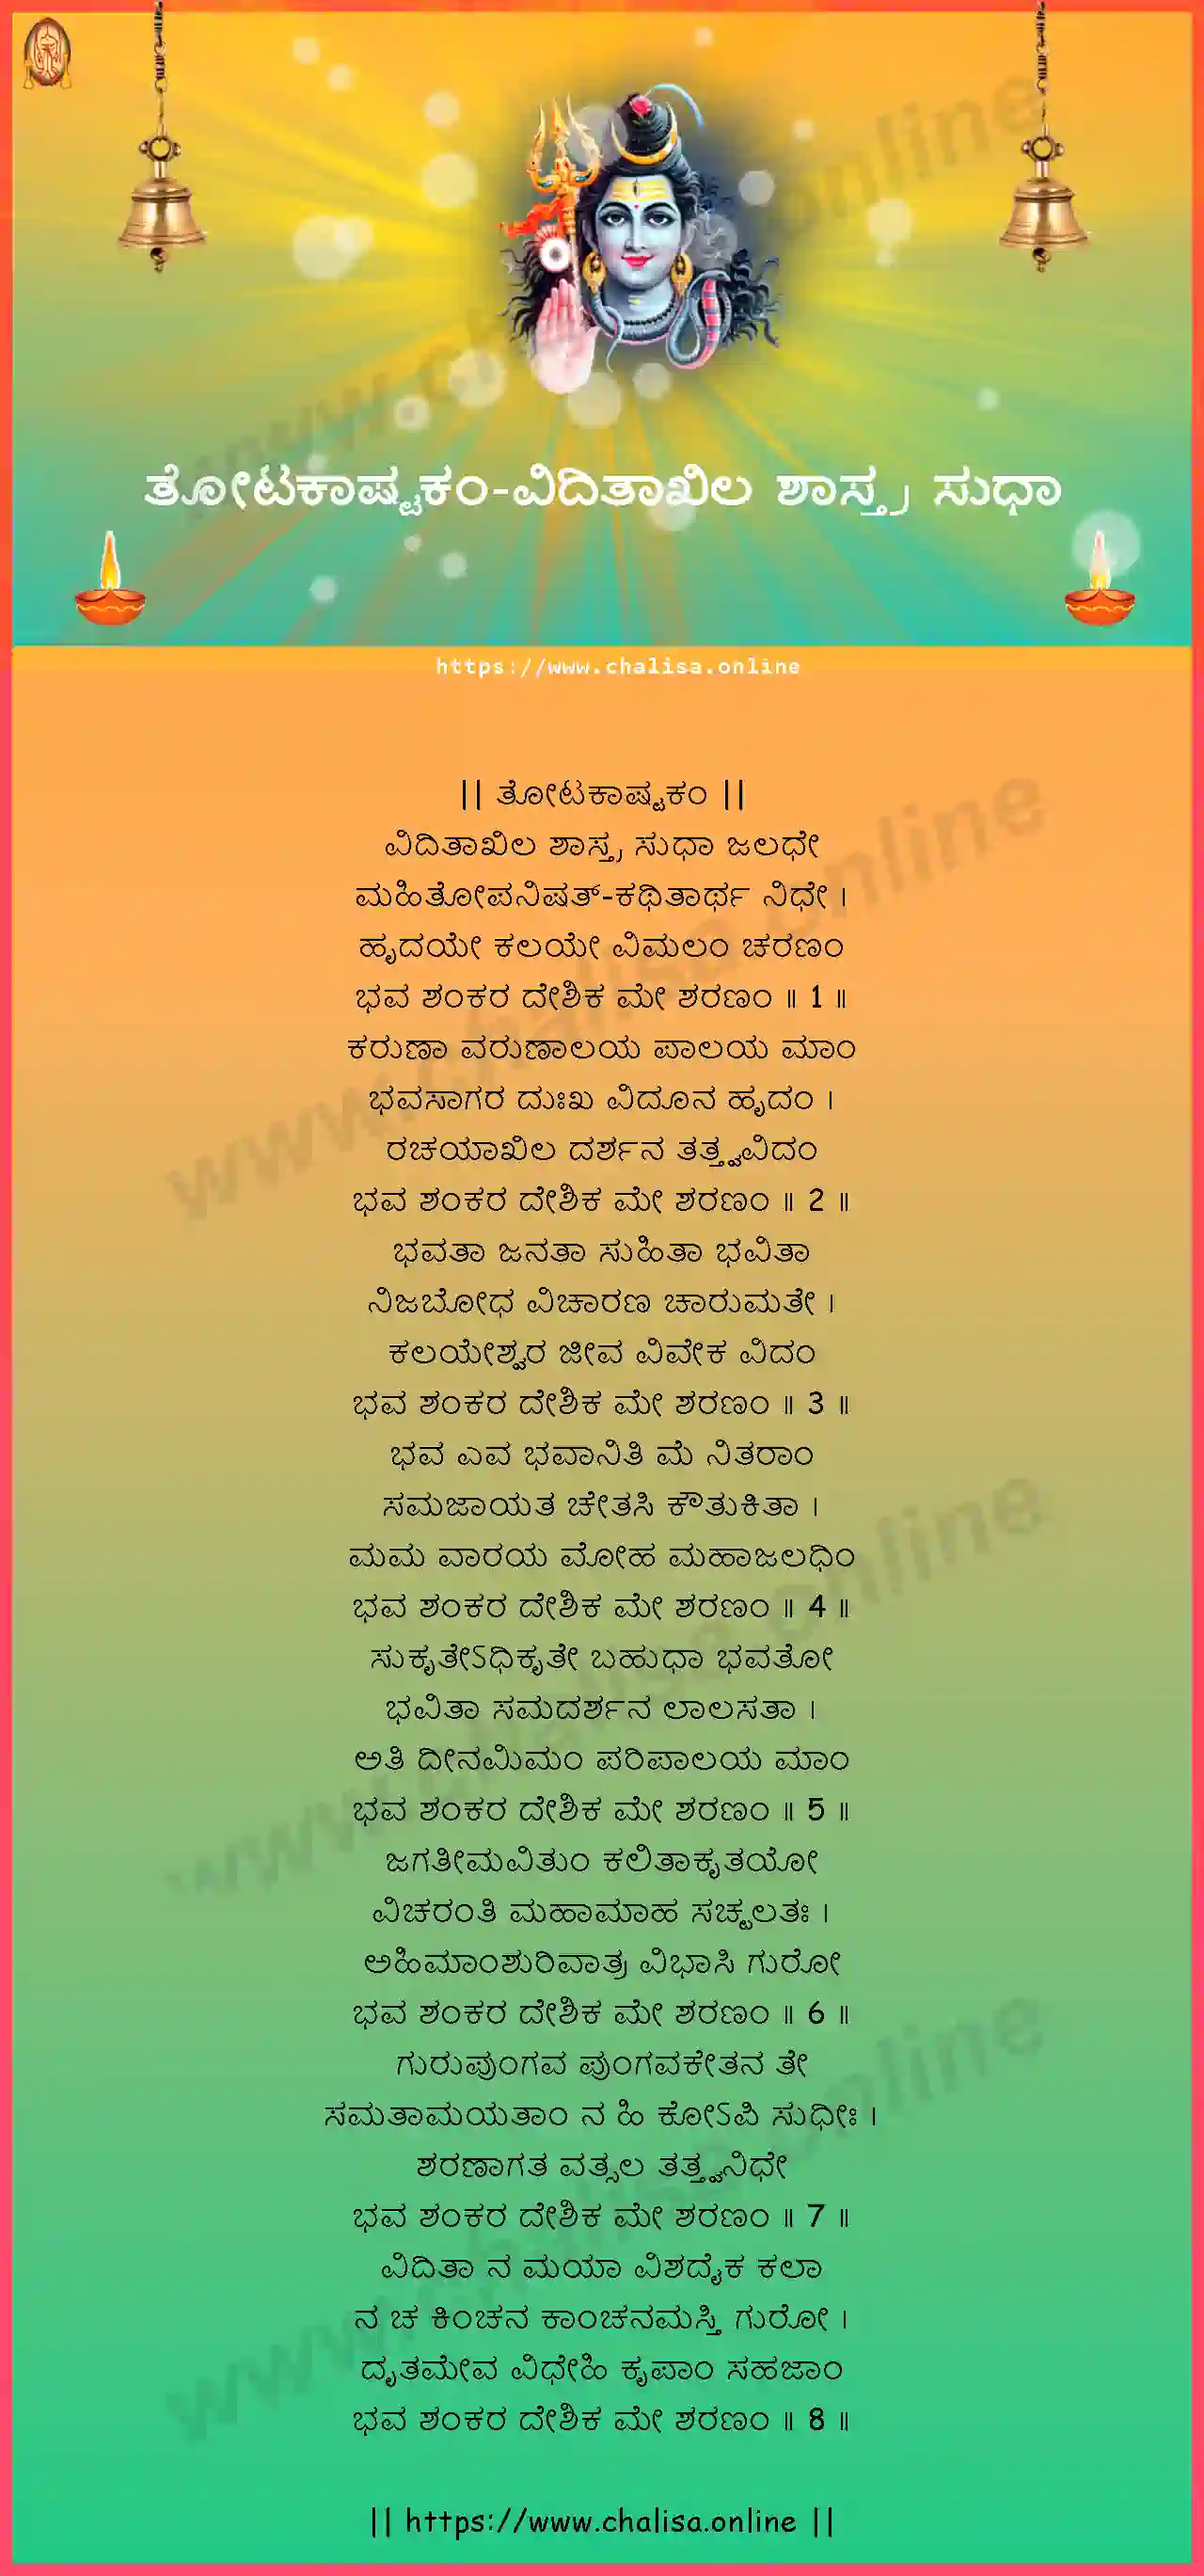 viditakhila-sastra-totakashtakam-kannada-kannada-lyrics-download